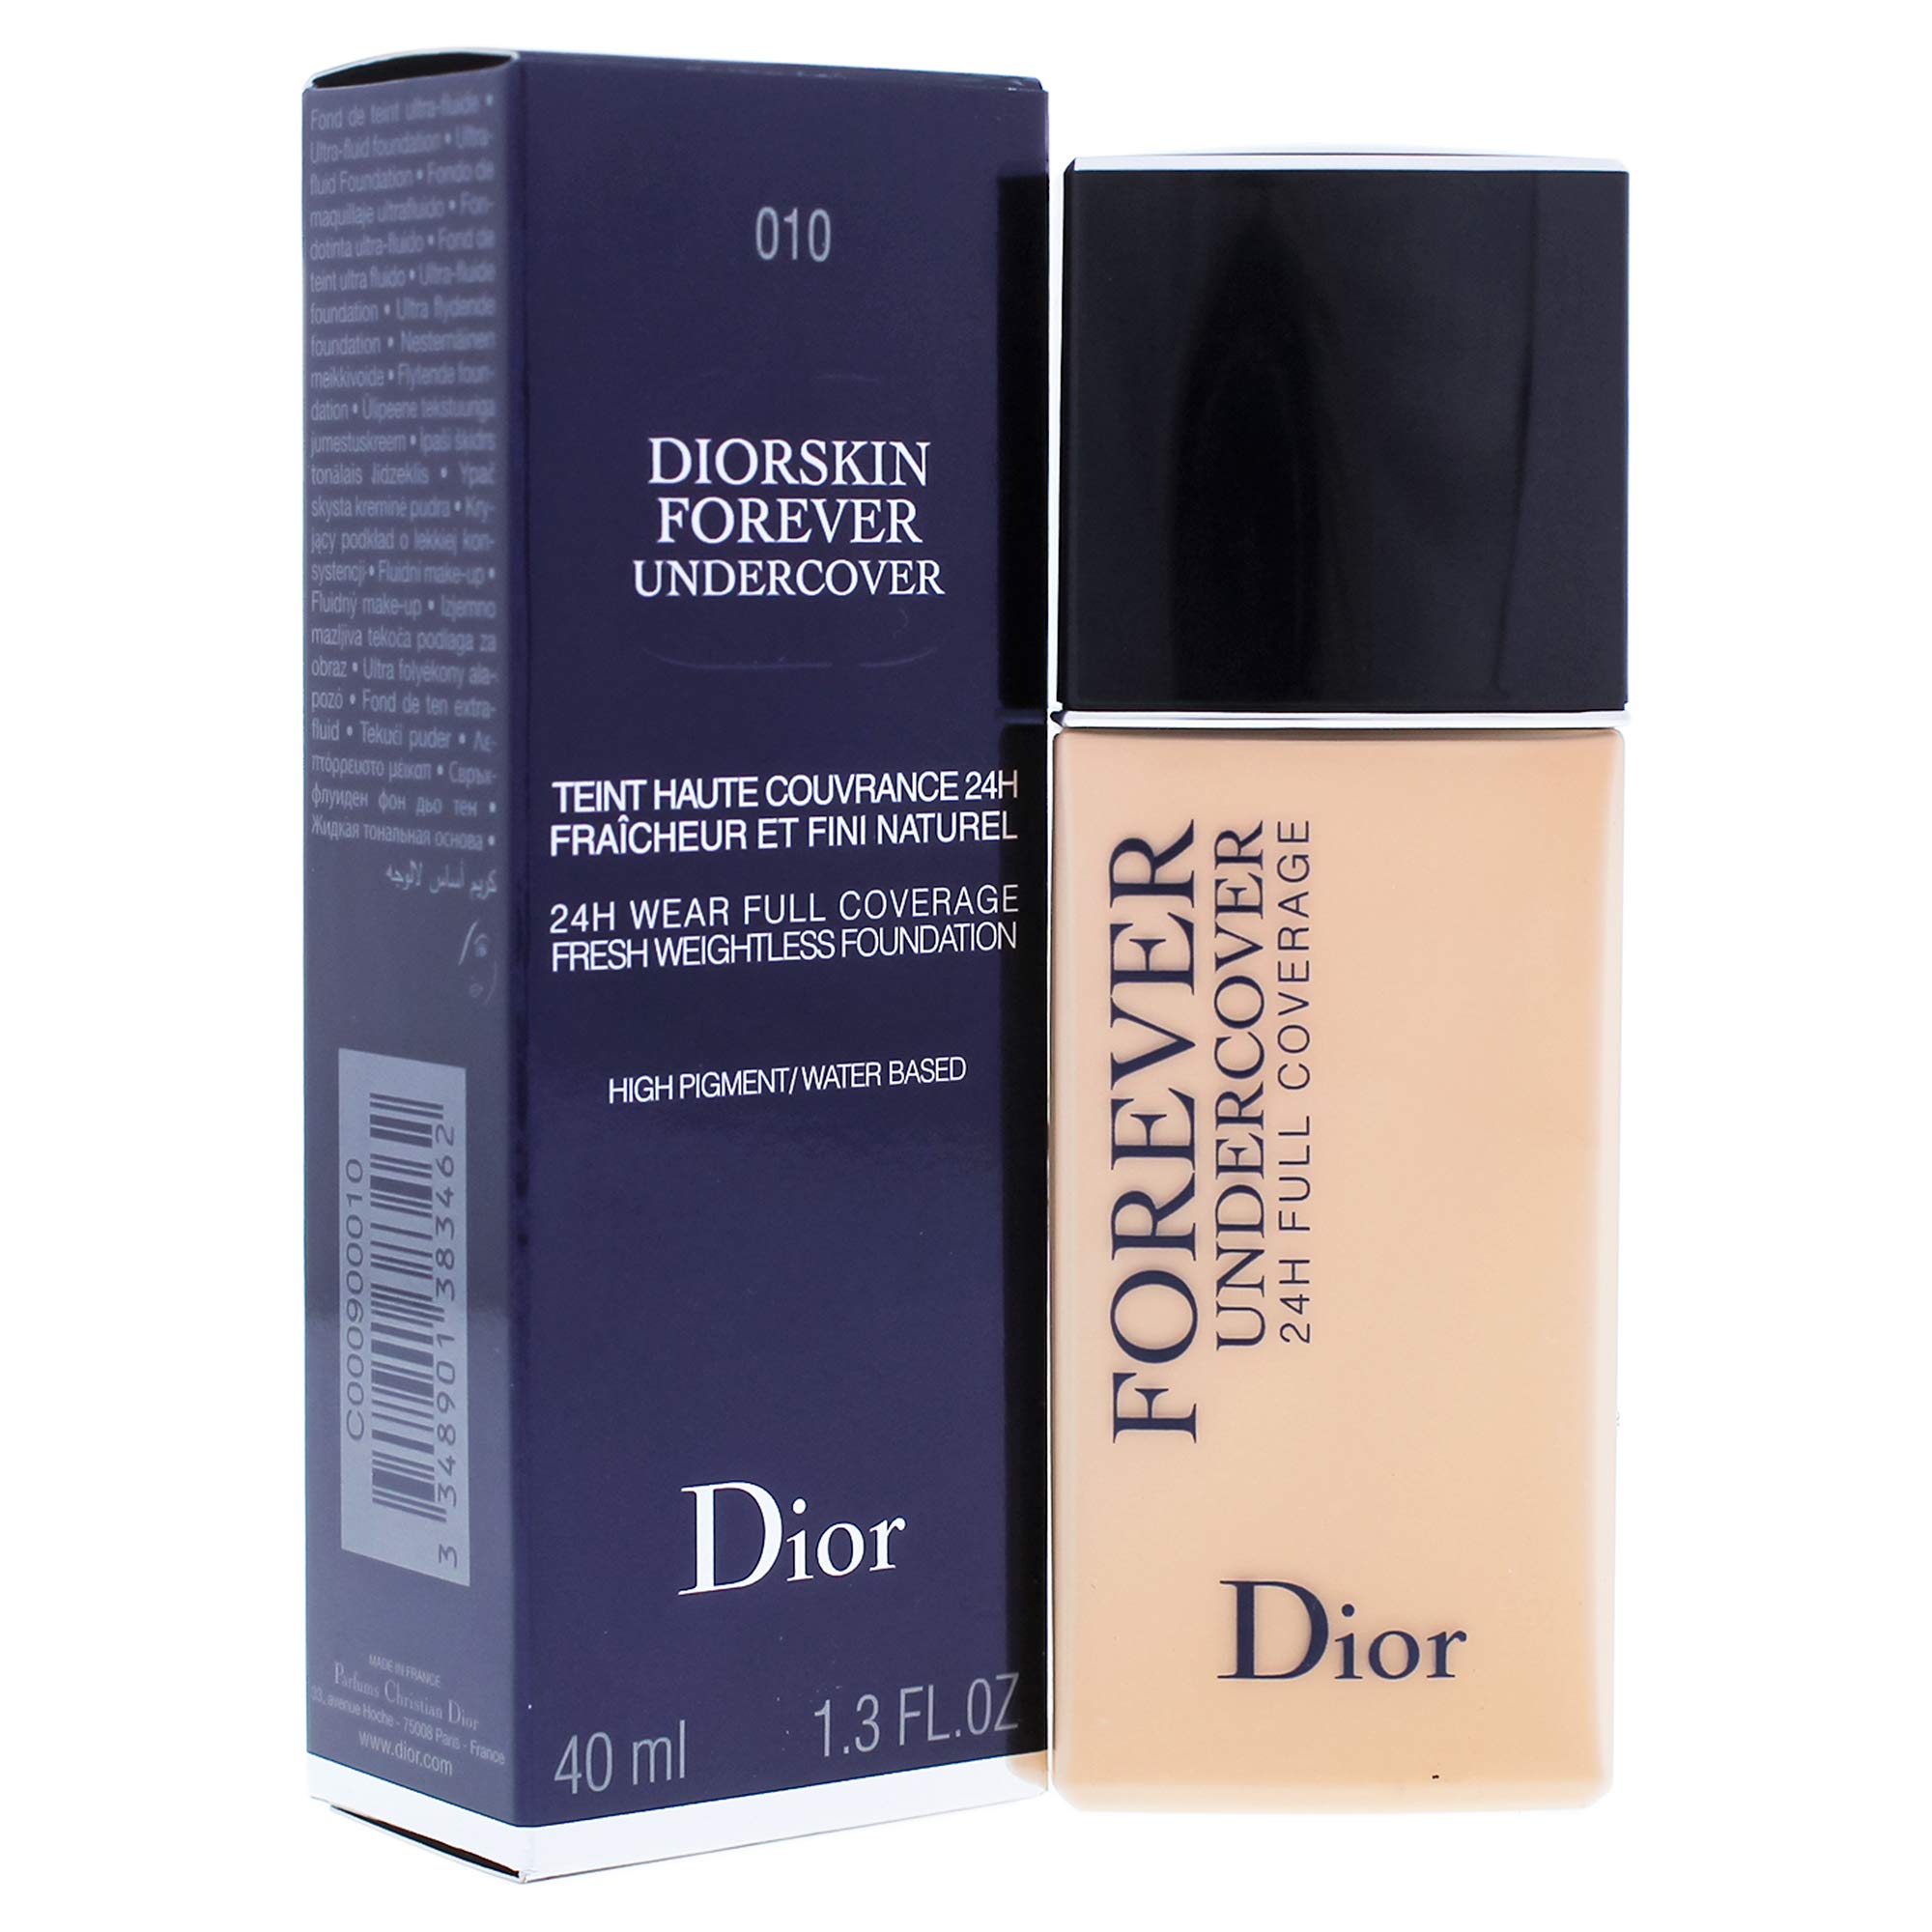 Mua Kem Nền Dior Diorskin Forever No010 30ml giá 1200000 trên Boshopvn